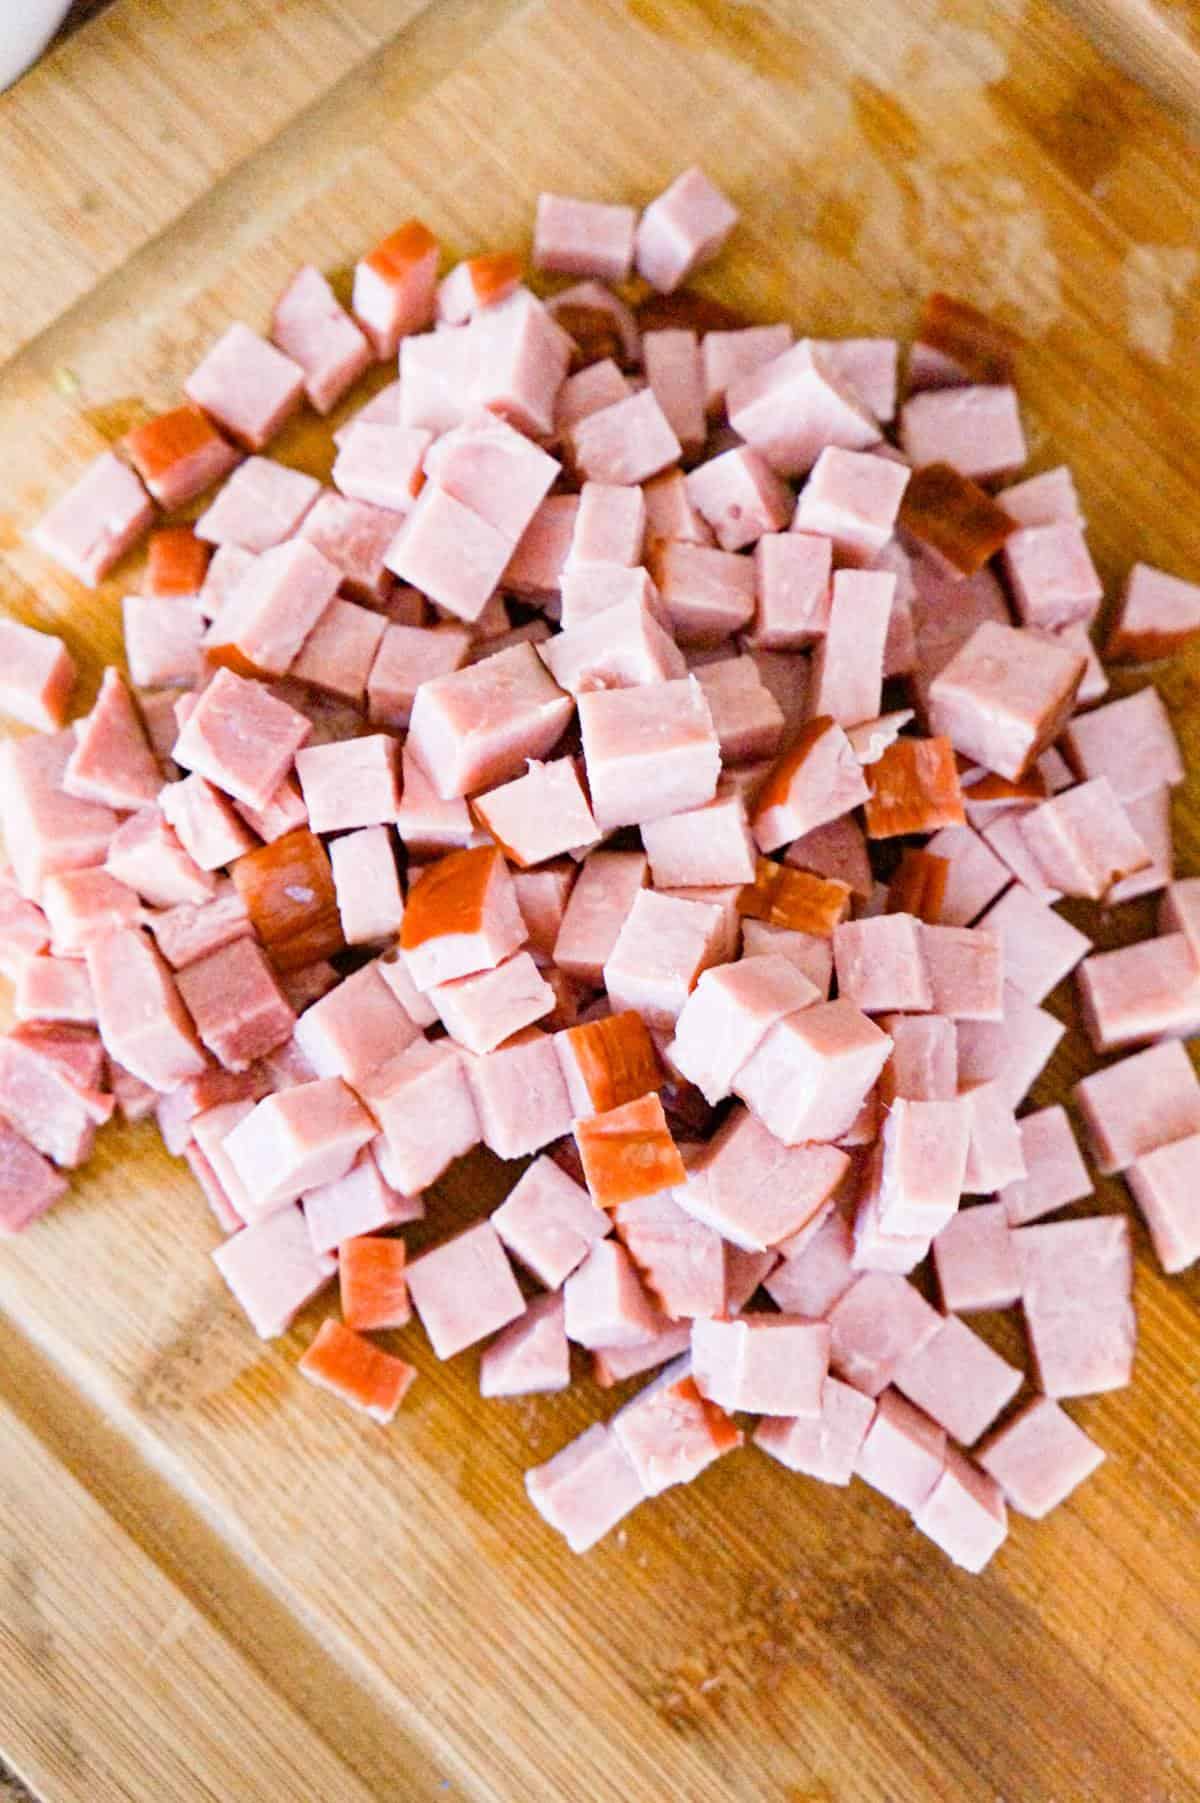 diced ham on a cutting board